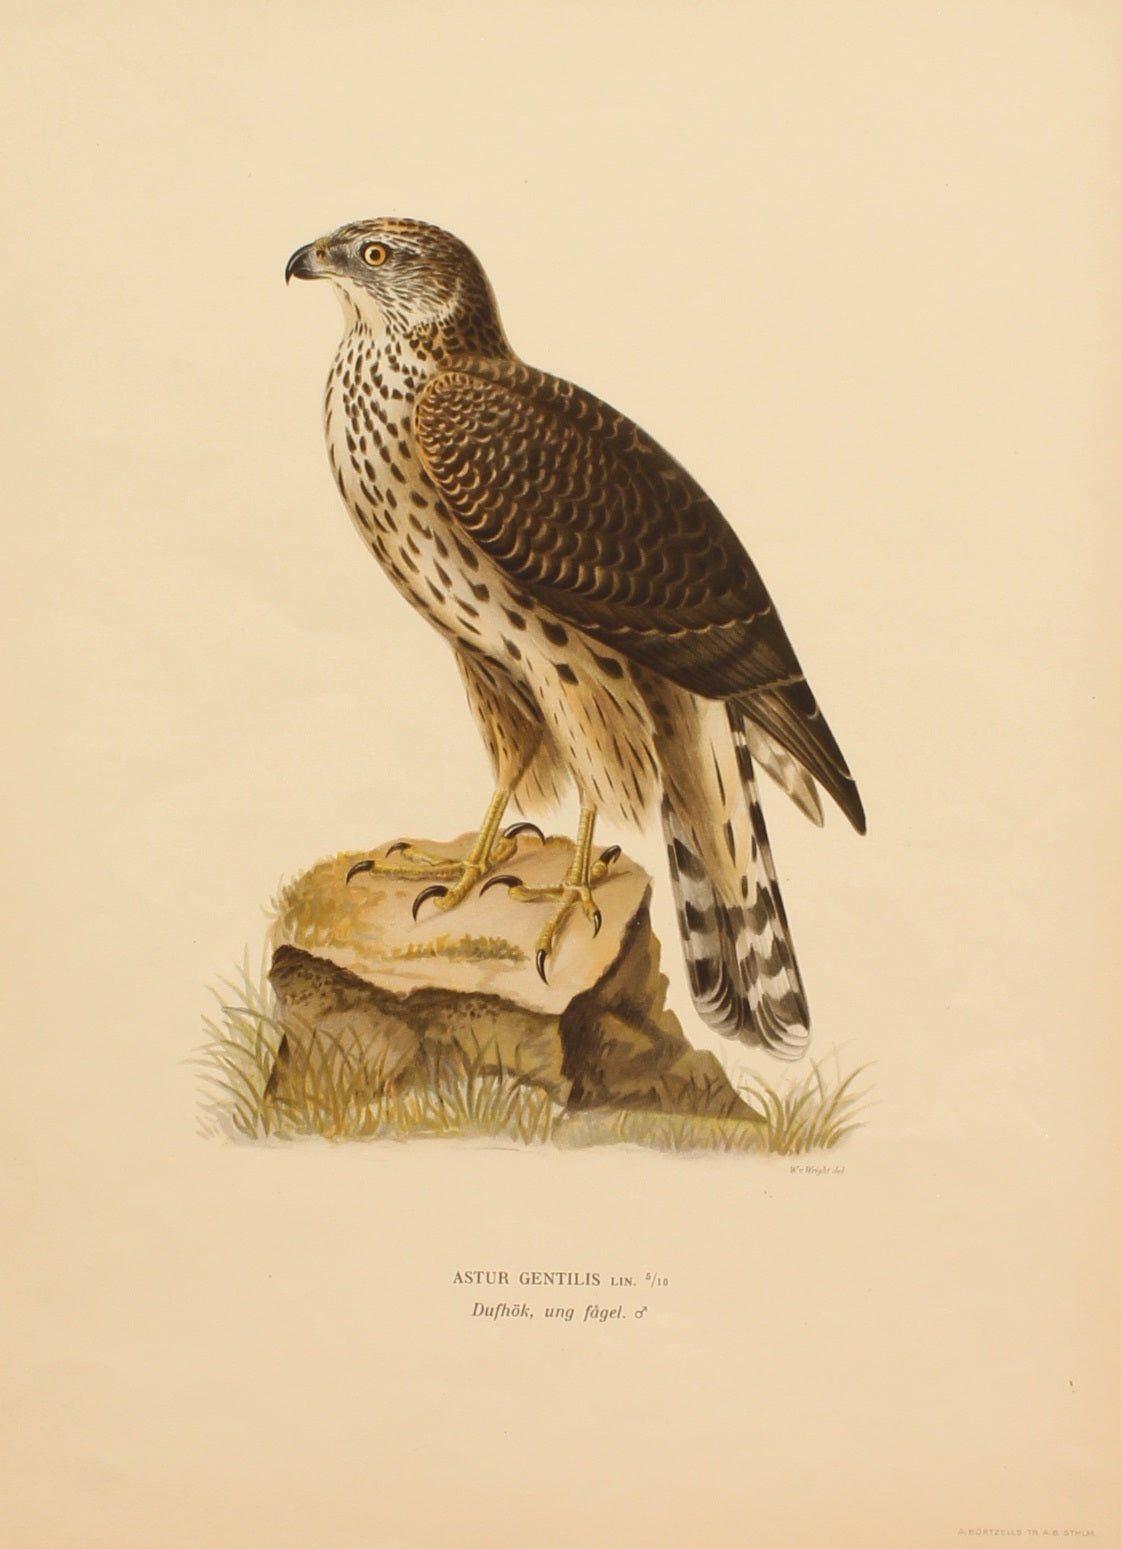 Bird, Von Wright Willhelm, Astur Gentilis, Sweden, c1927